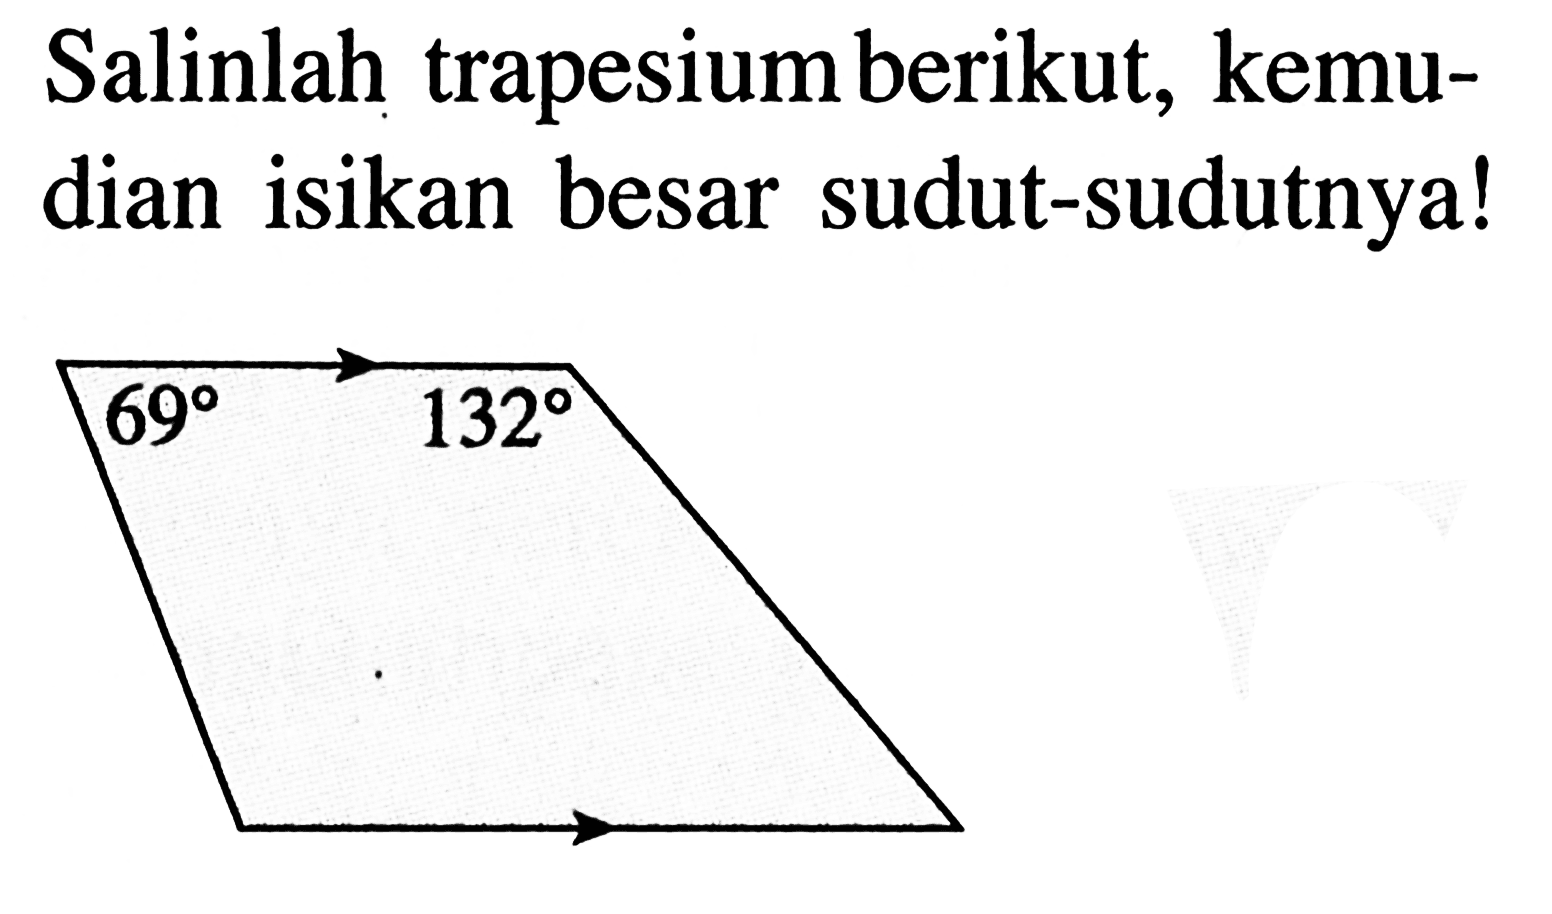 Salinlah trapesium berikut, kemudian isikan besar sudut-sudutnya! 69 132 